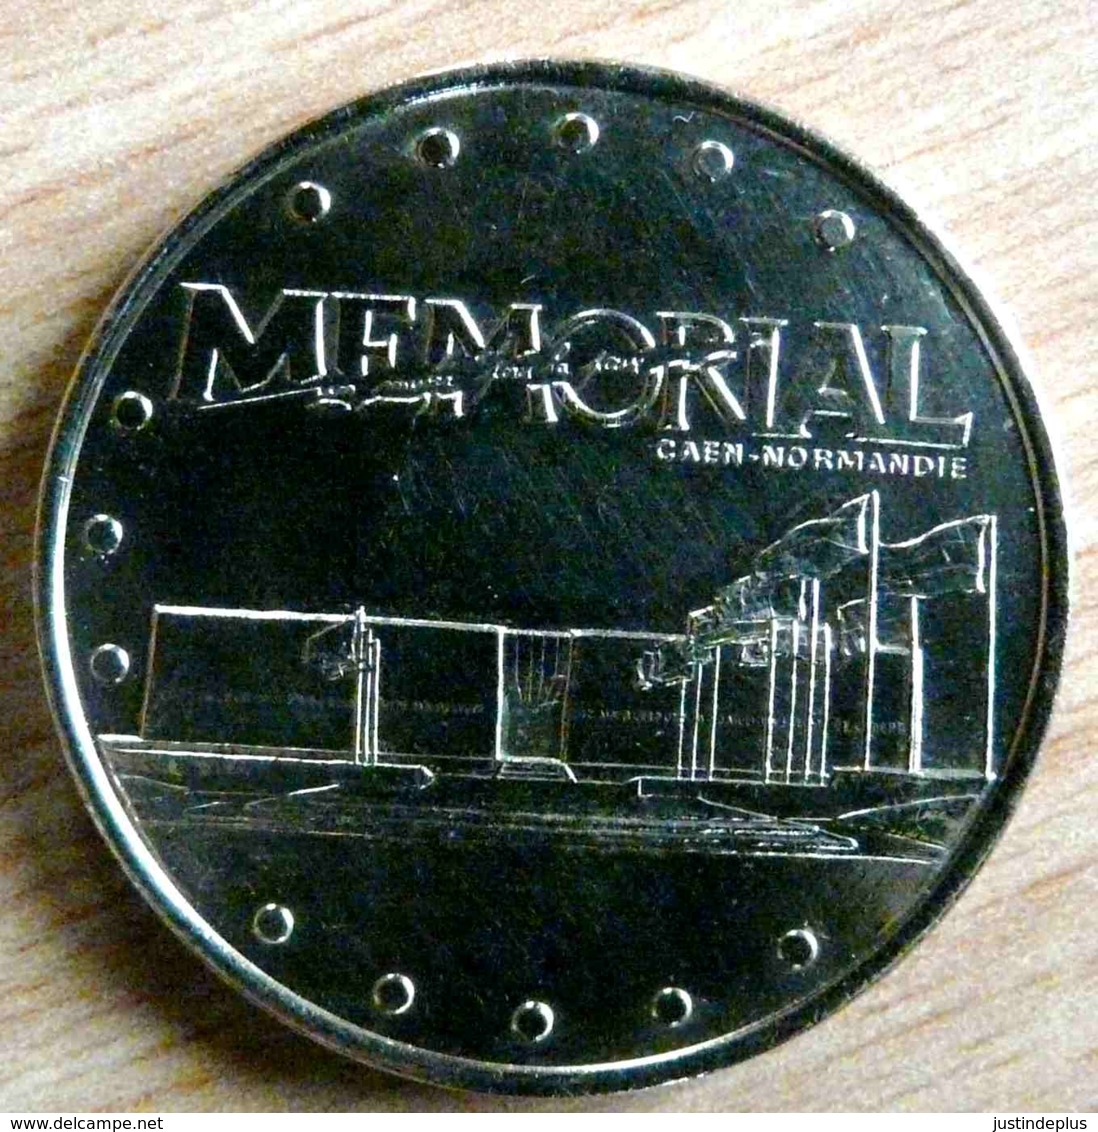 MEMORIAL CAEN NORMANDIE 2003 MONNAIE DE PARIS COLLECTION NATIONALE MEDAILLE OFFICIELLE JETON TOURISTIQUE - 2003